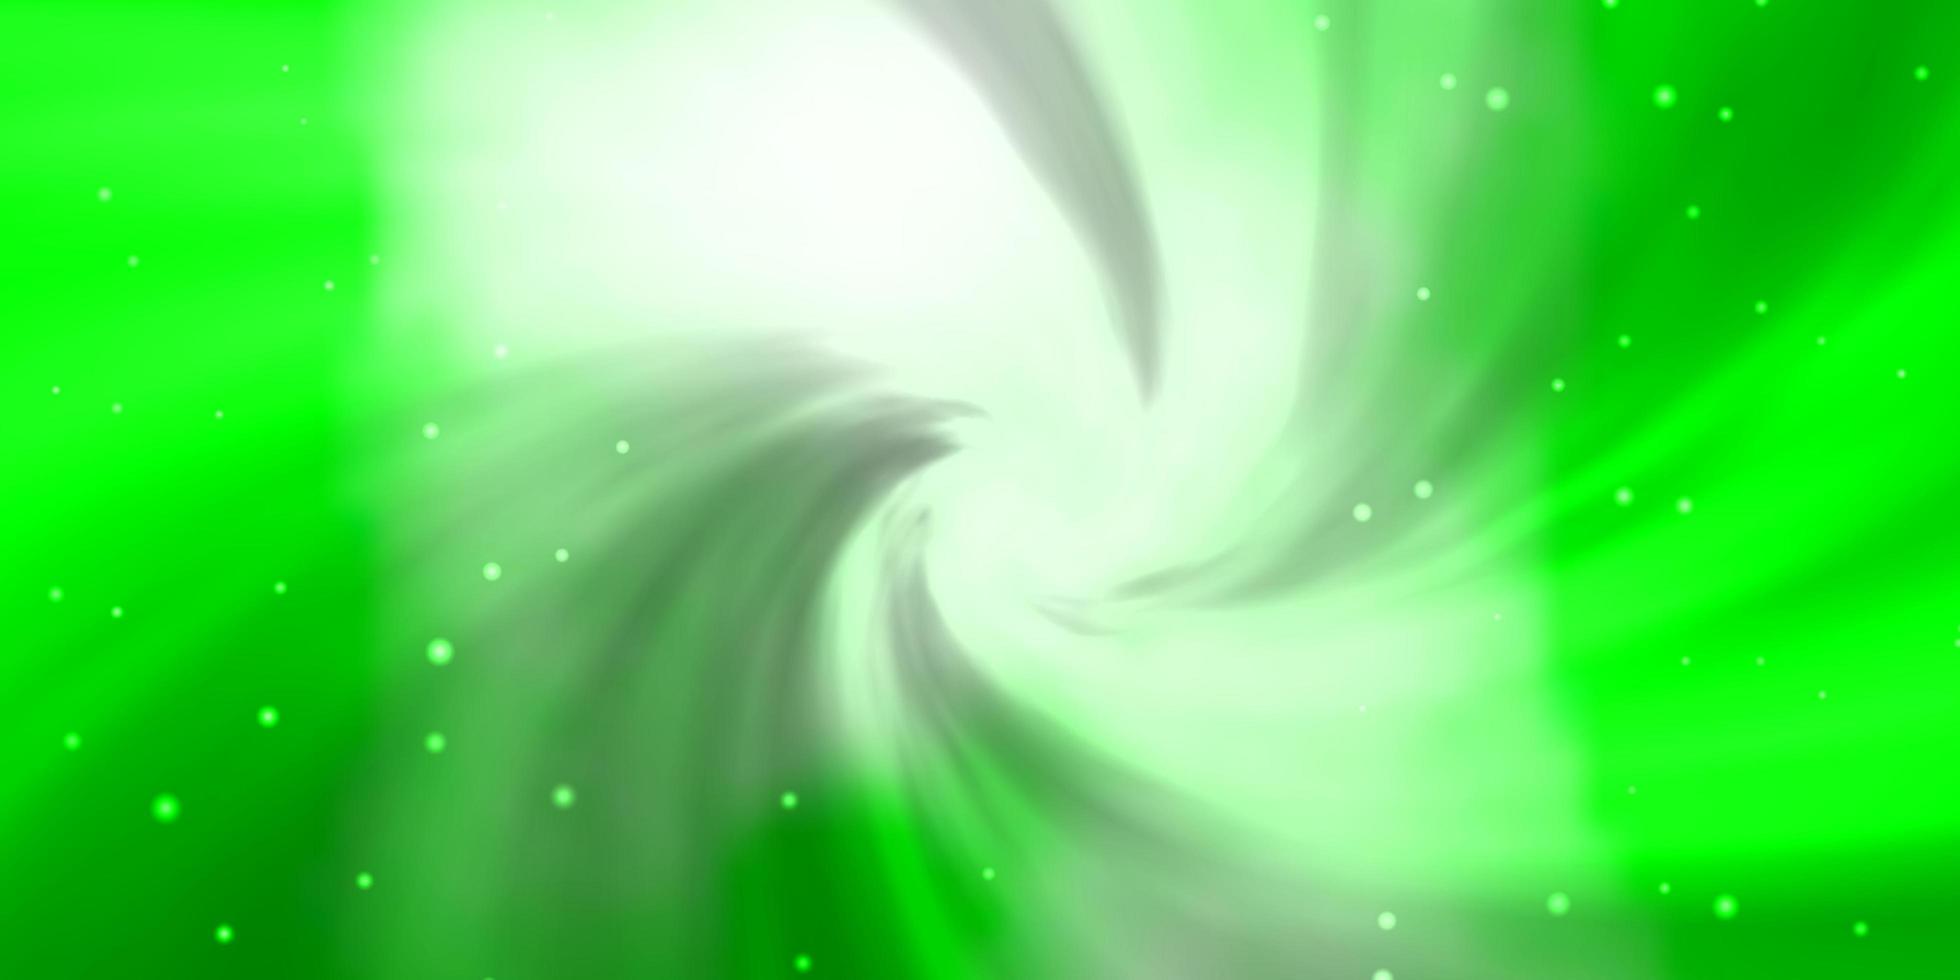 ljusgrön vektorlayout med ljusa stjärnor. vektor